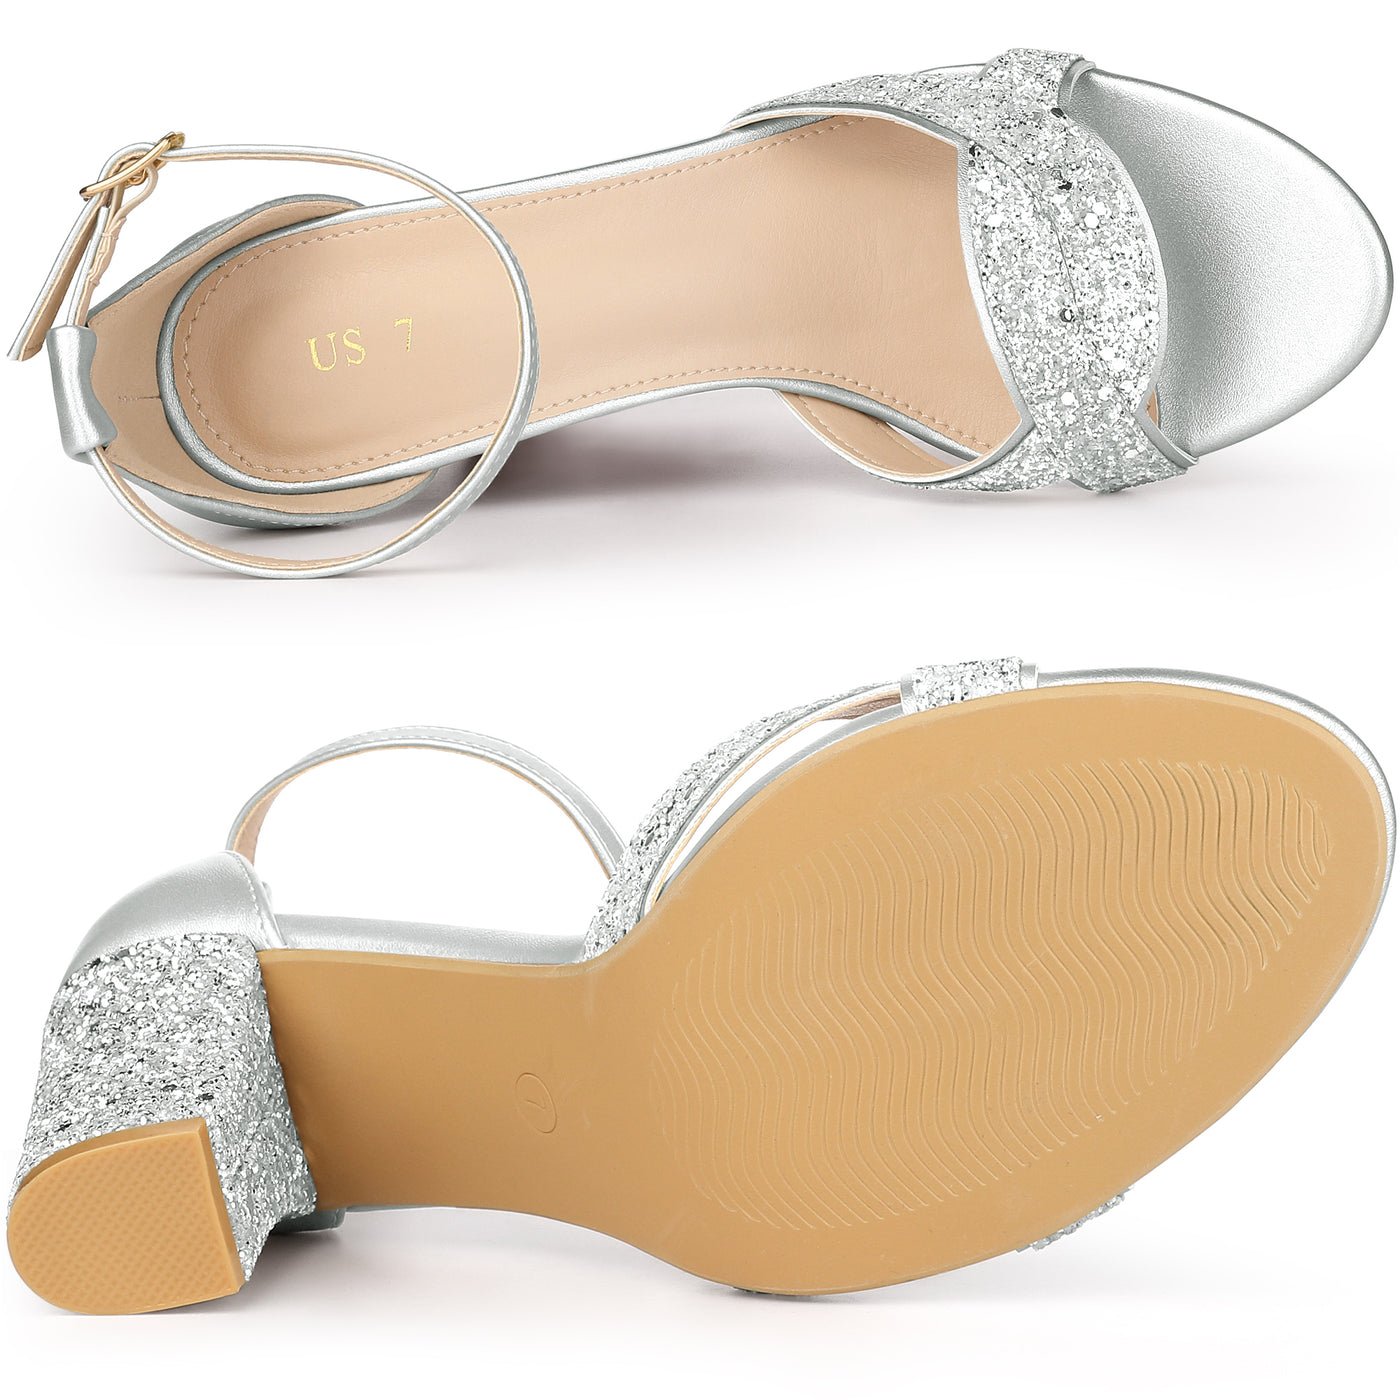 Allegra K Women's Bling Glitter Ankle Strap High Chunky Heel Sandals